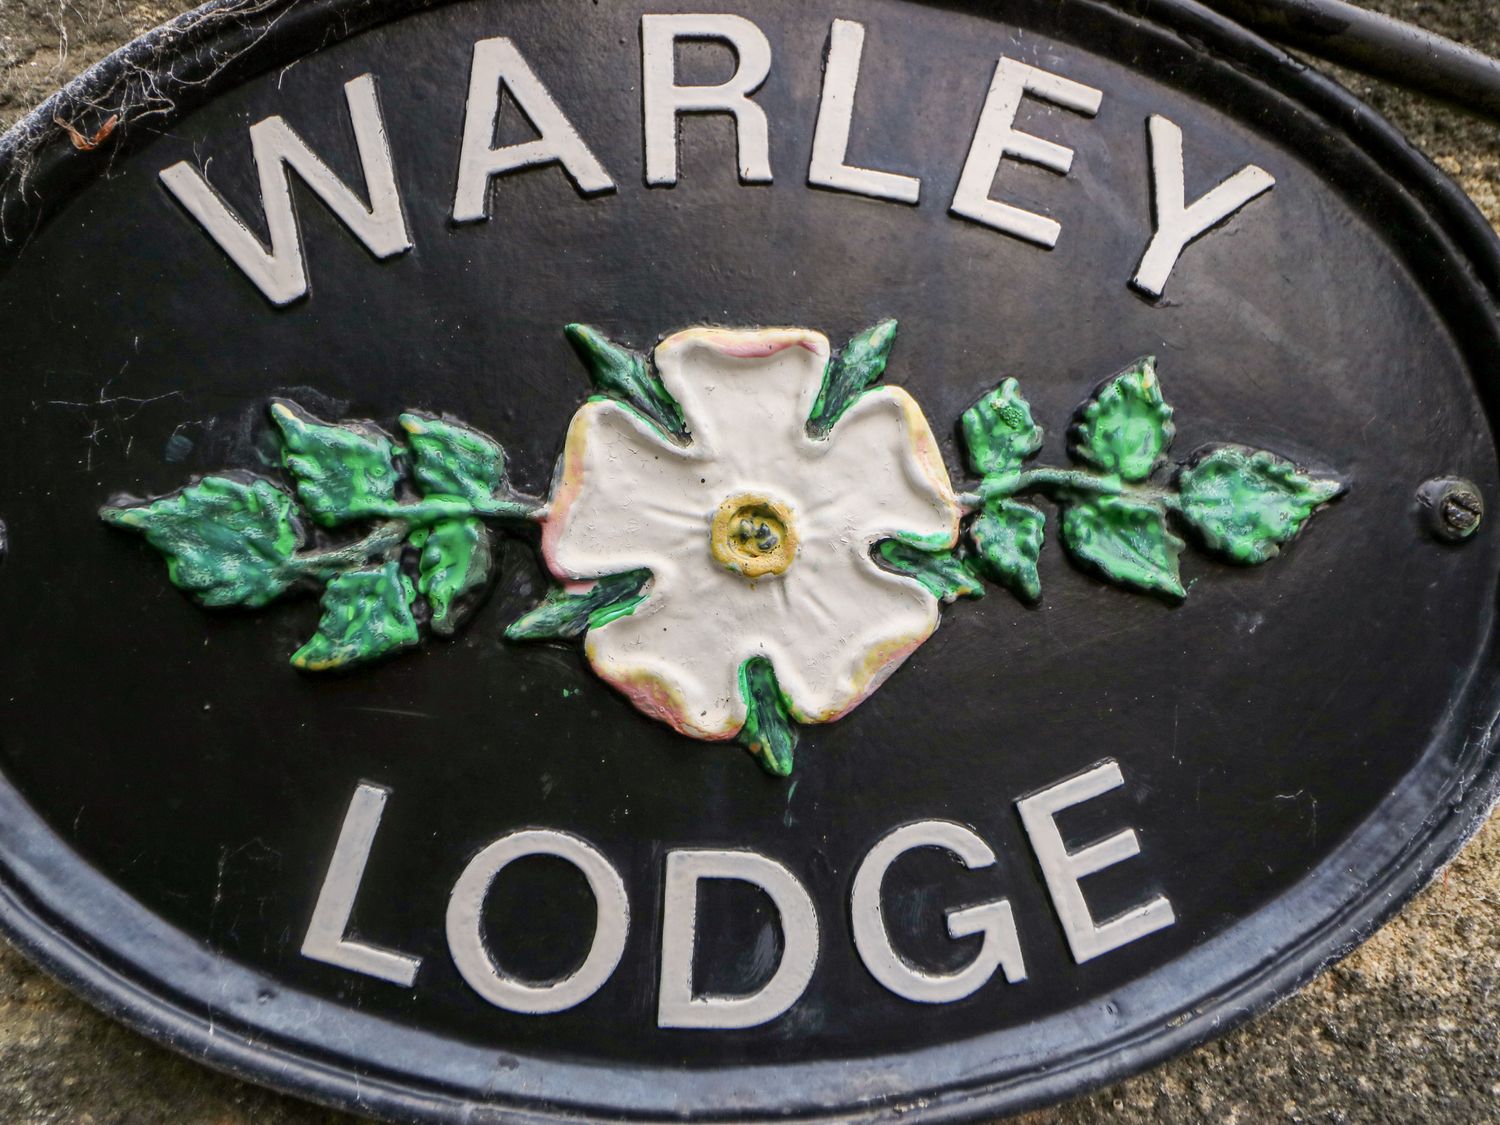 Warley Lodge, Halifax